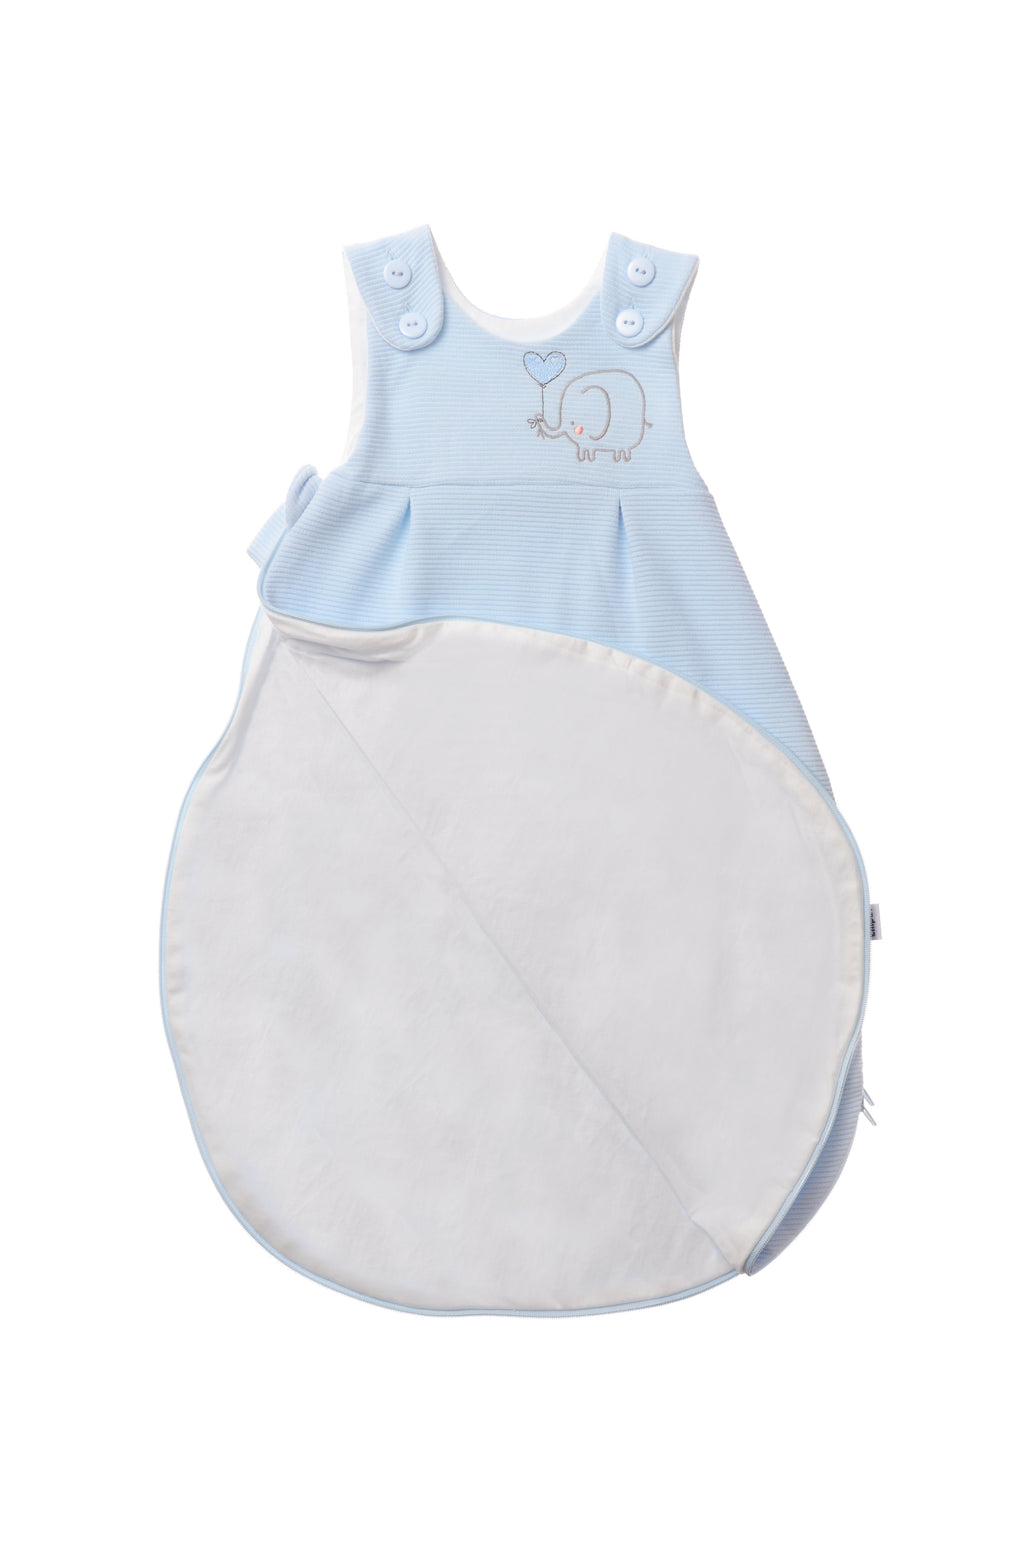 Schlafsack für Babys in unterschiedlichen Längen mit Knöpfen und Reißverschluss an der Seite. Design:  hellblau mit Elefanten Stickerei.